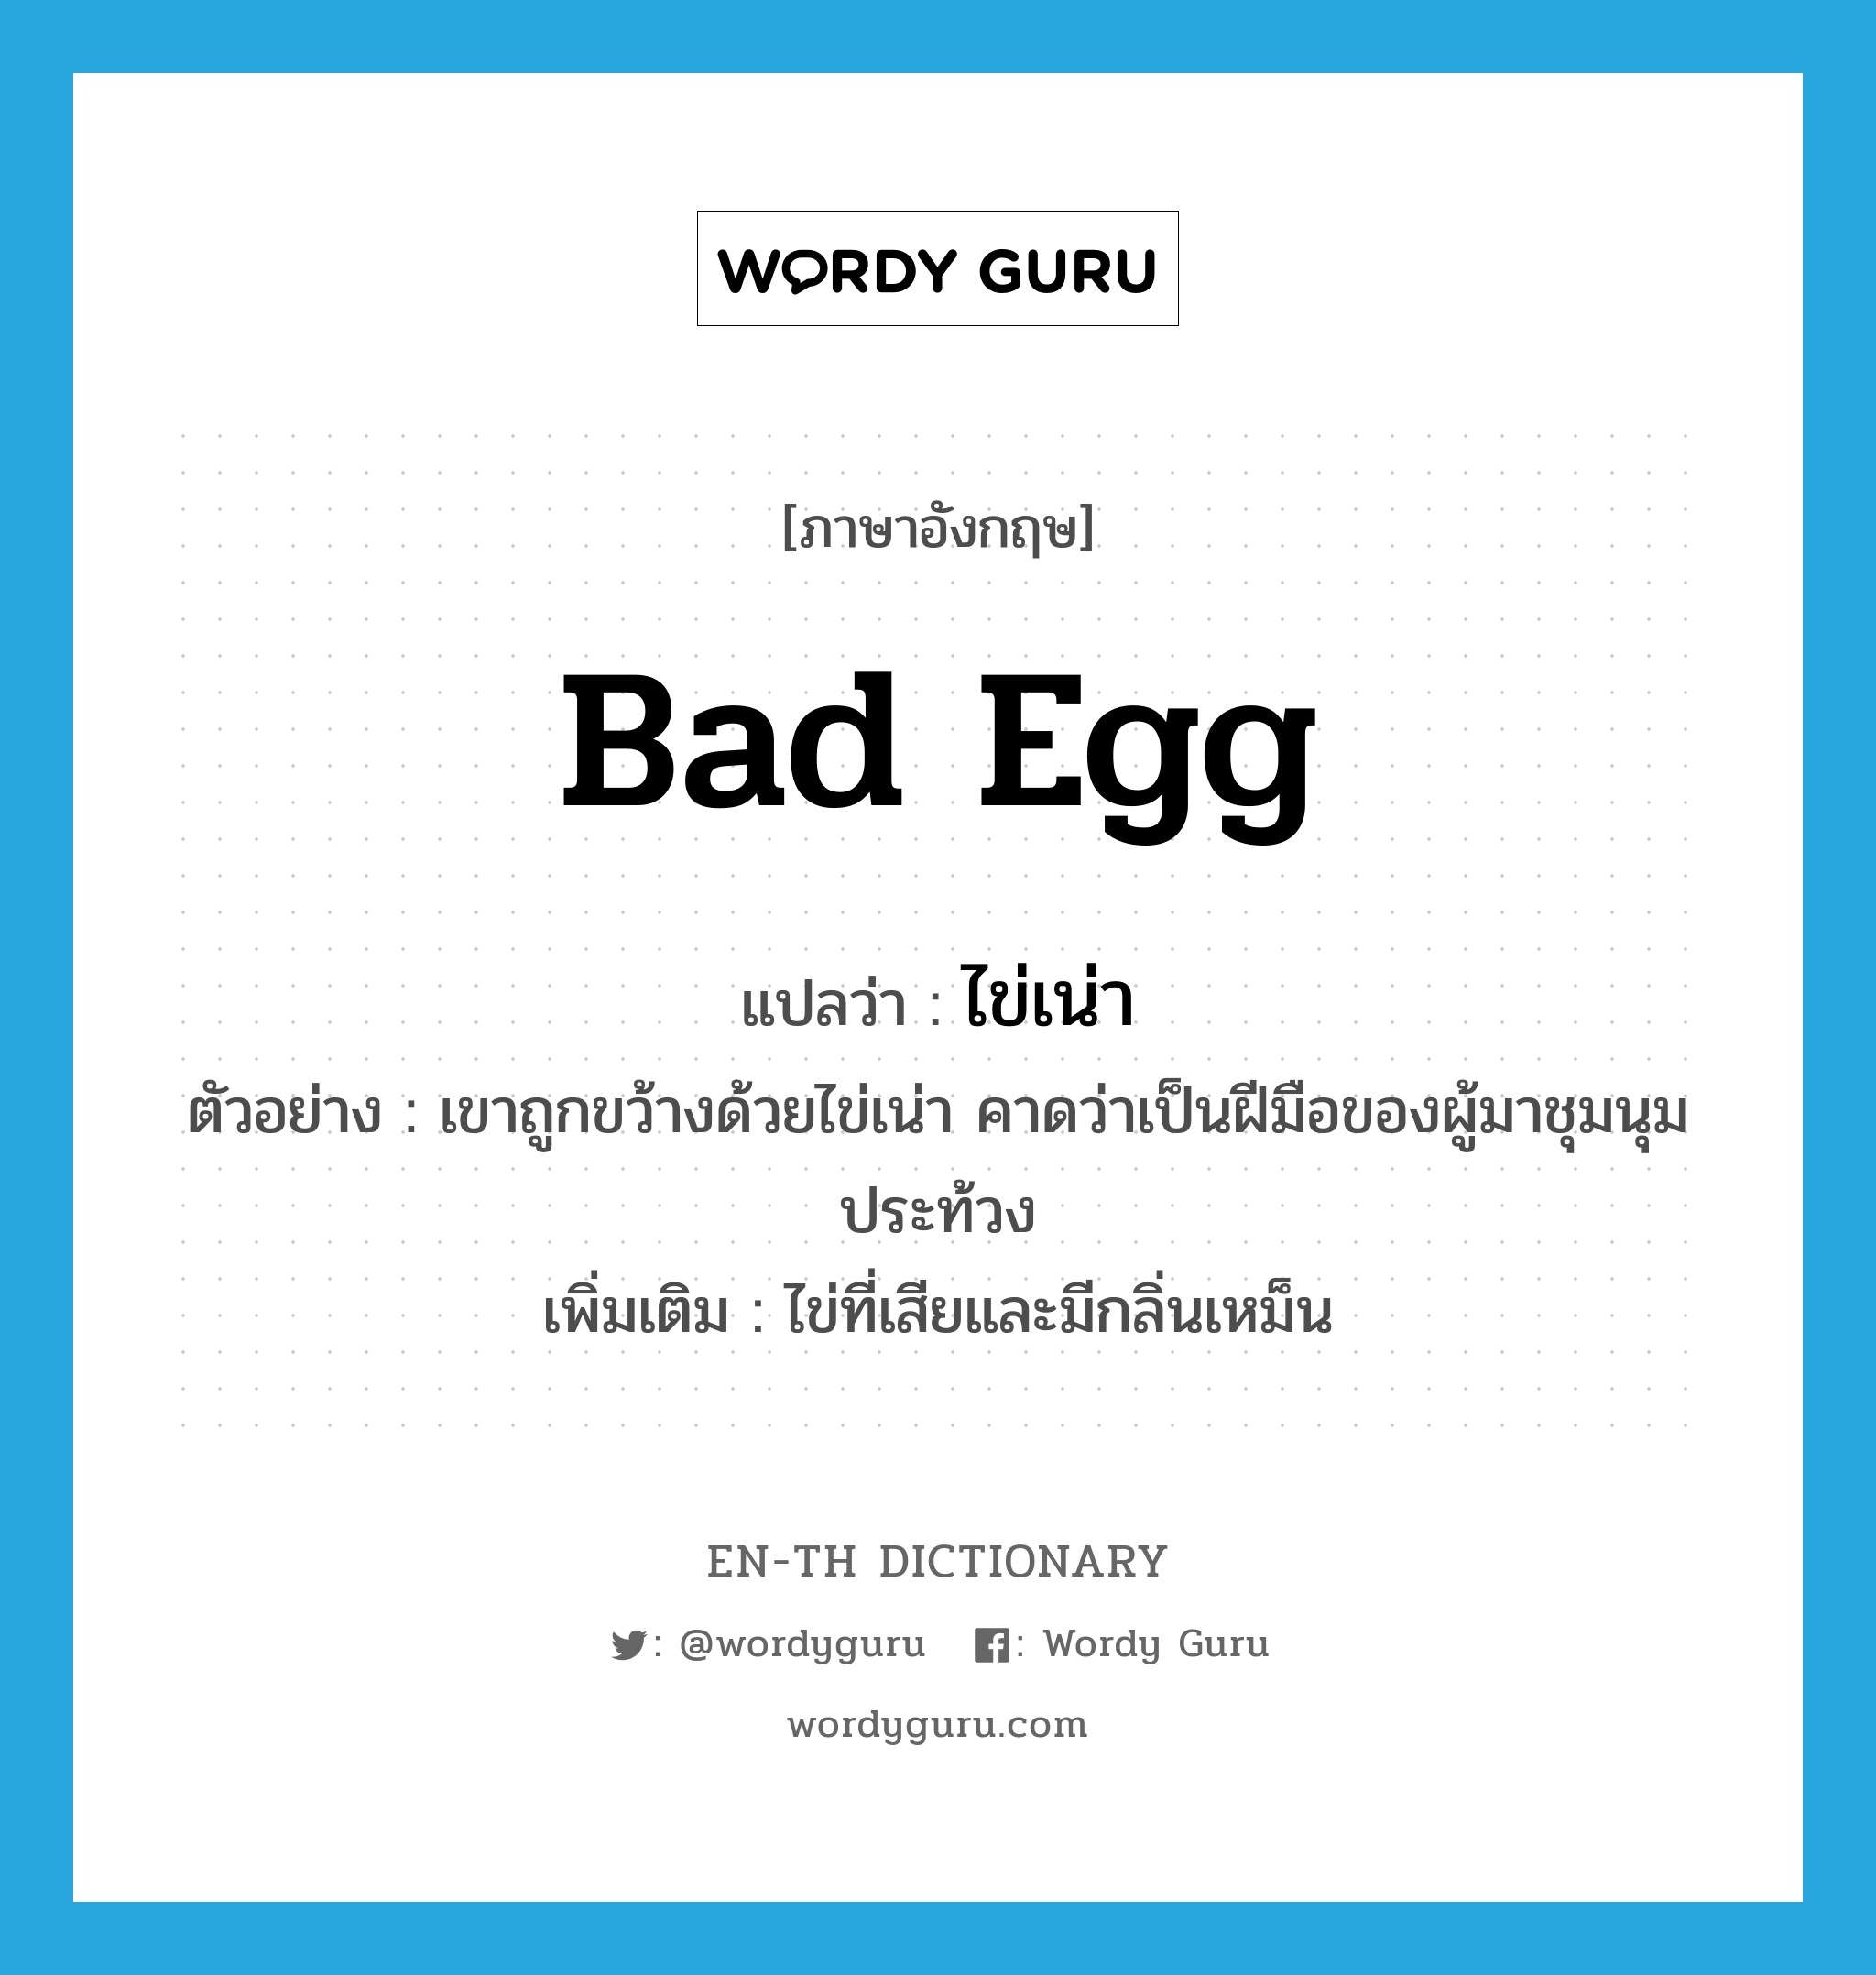 bad egg แปลว่า?, คำศัพท์ภาษาอังกฤษ bad egg แปลว่า ไข่เน่า ประเภท N ตัวอย่าง เขาถูกขว้างด้วยไข่เน่า คาดว่าเป็นฝีมือของผู้มาชุมนุมประท้วง เพิ่มเติม ไข่ที่เสียและมีกลิ่นเหม็น หมวด N